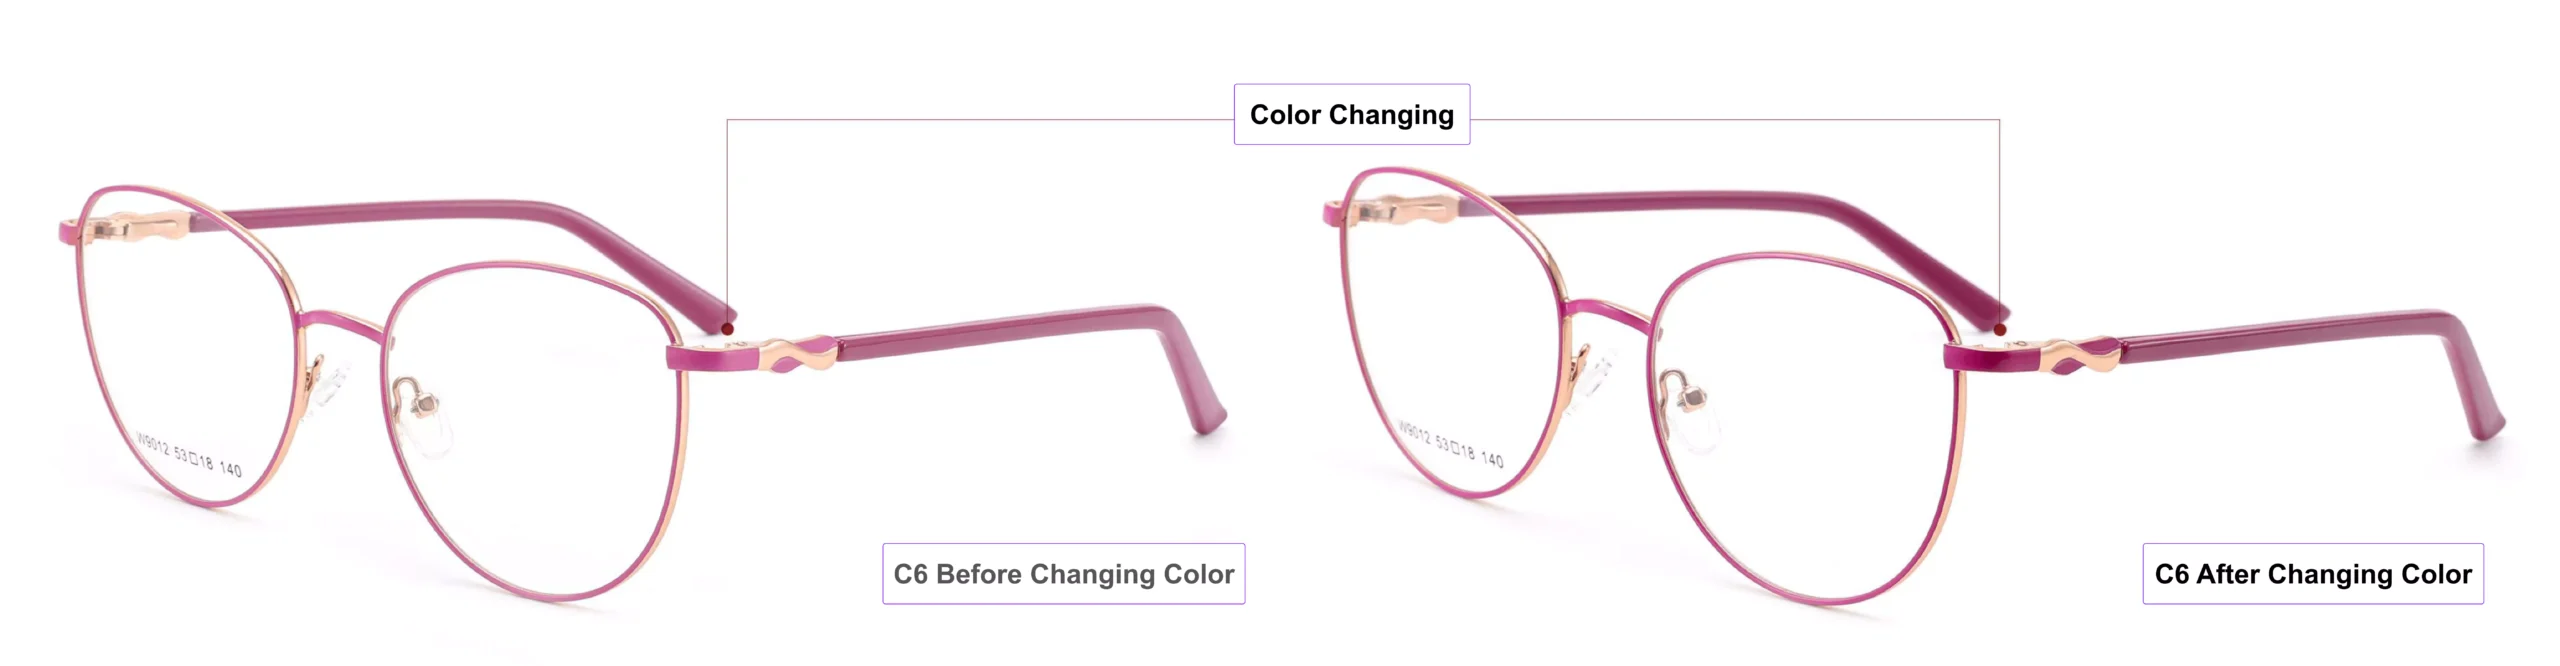 Color Changing Glasses Frames, pink gold, violet, shock pink, process of color changing